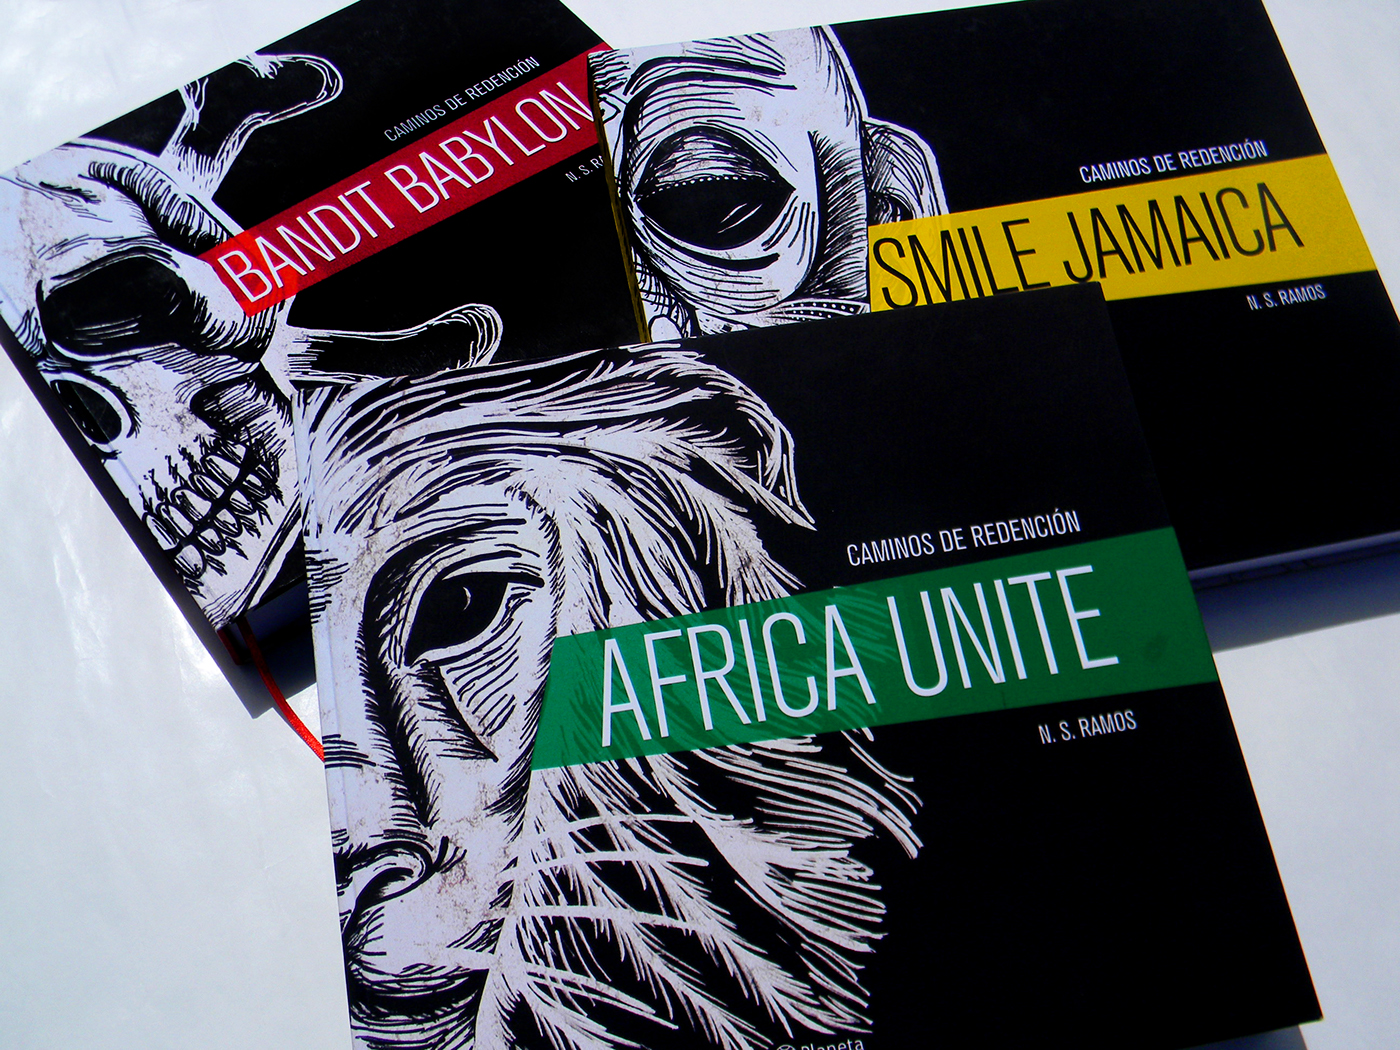 Rastafarismo Diseño editorial colección ilustration handmade libros africa unite smile jamaica bandit babylon